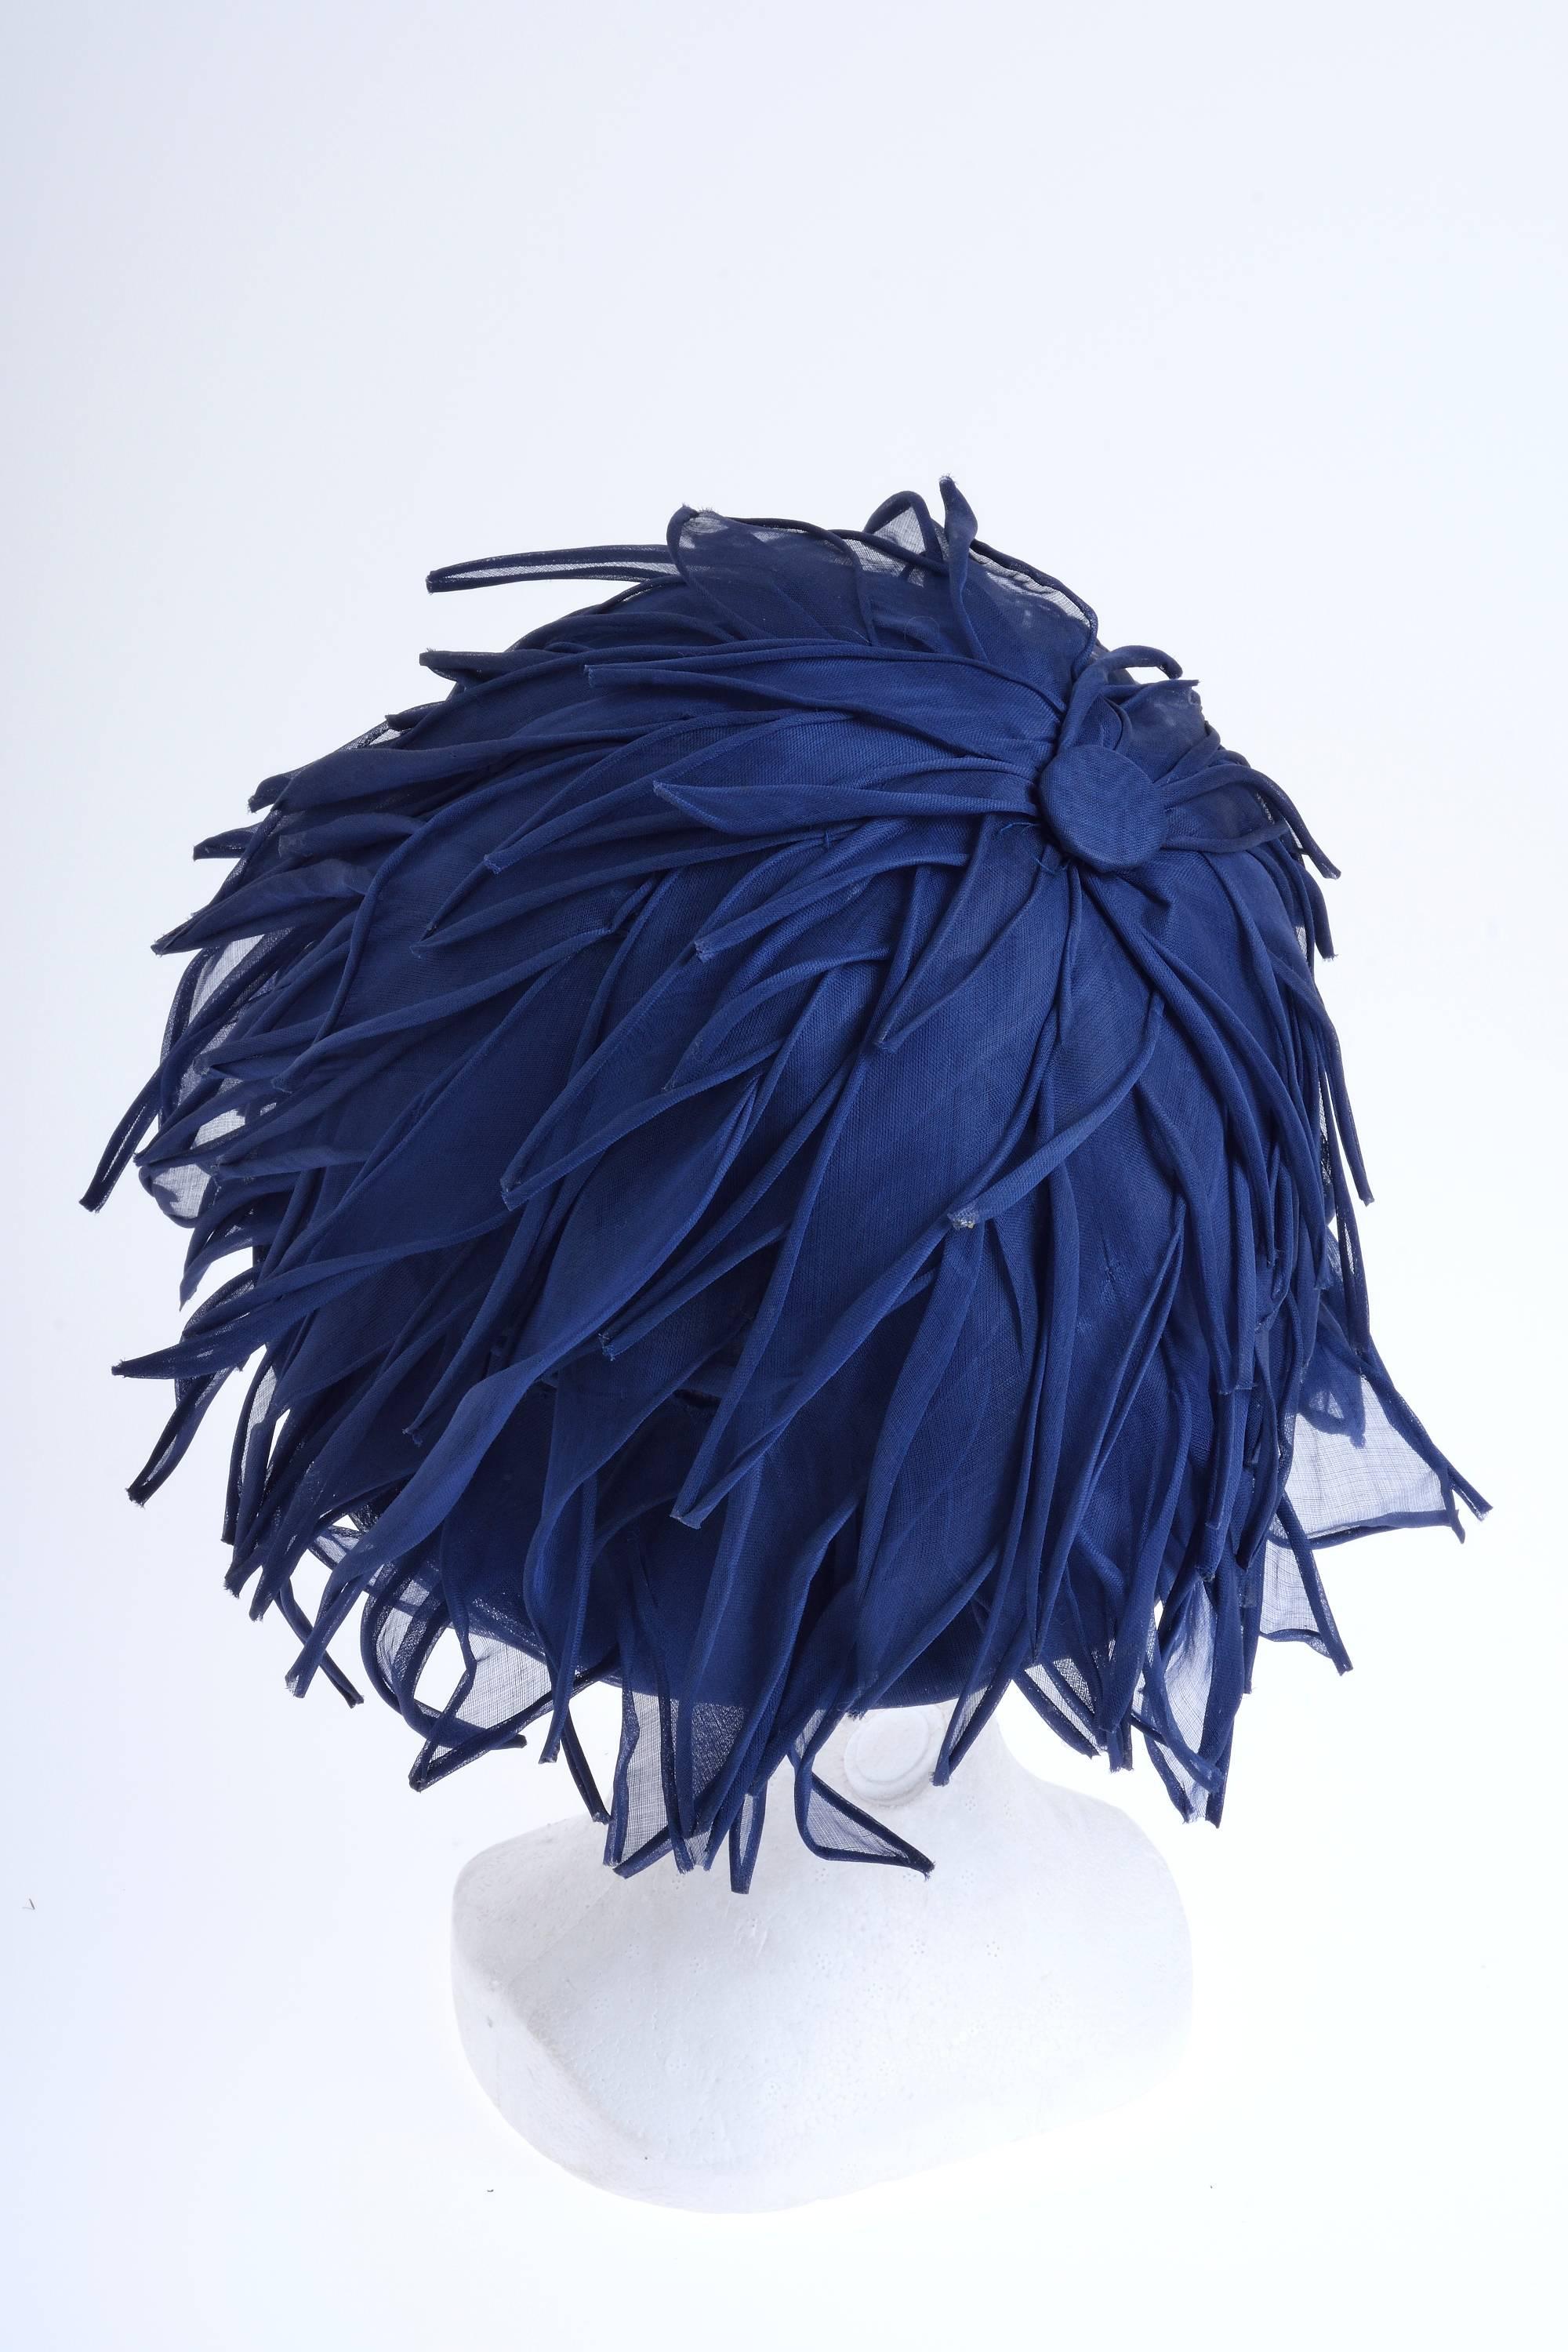 This gorgeous Lanvin 1960s hat has amazing blue organdy silk petals. 

Excellent vintage condition

Label: JEANNE LANVIN Paris Castillo
Color : Blue

Measurements:
Height 7 inches
Hat diameter 8 inches
